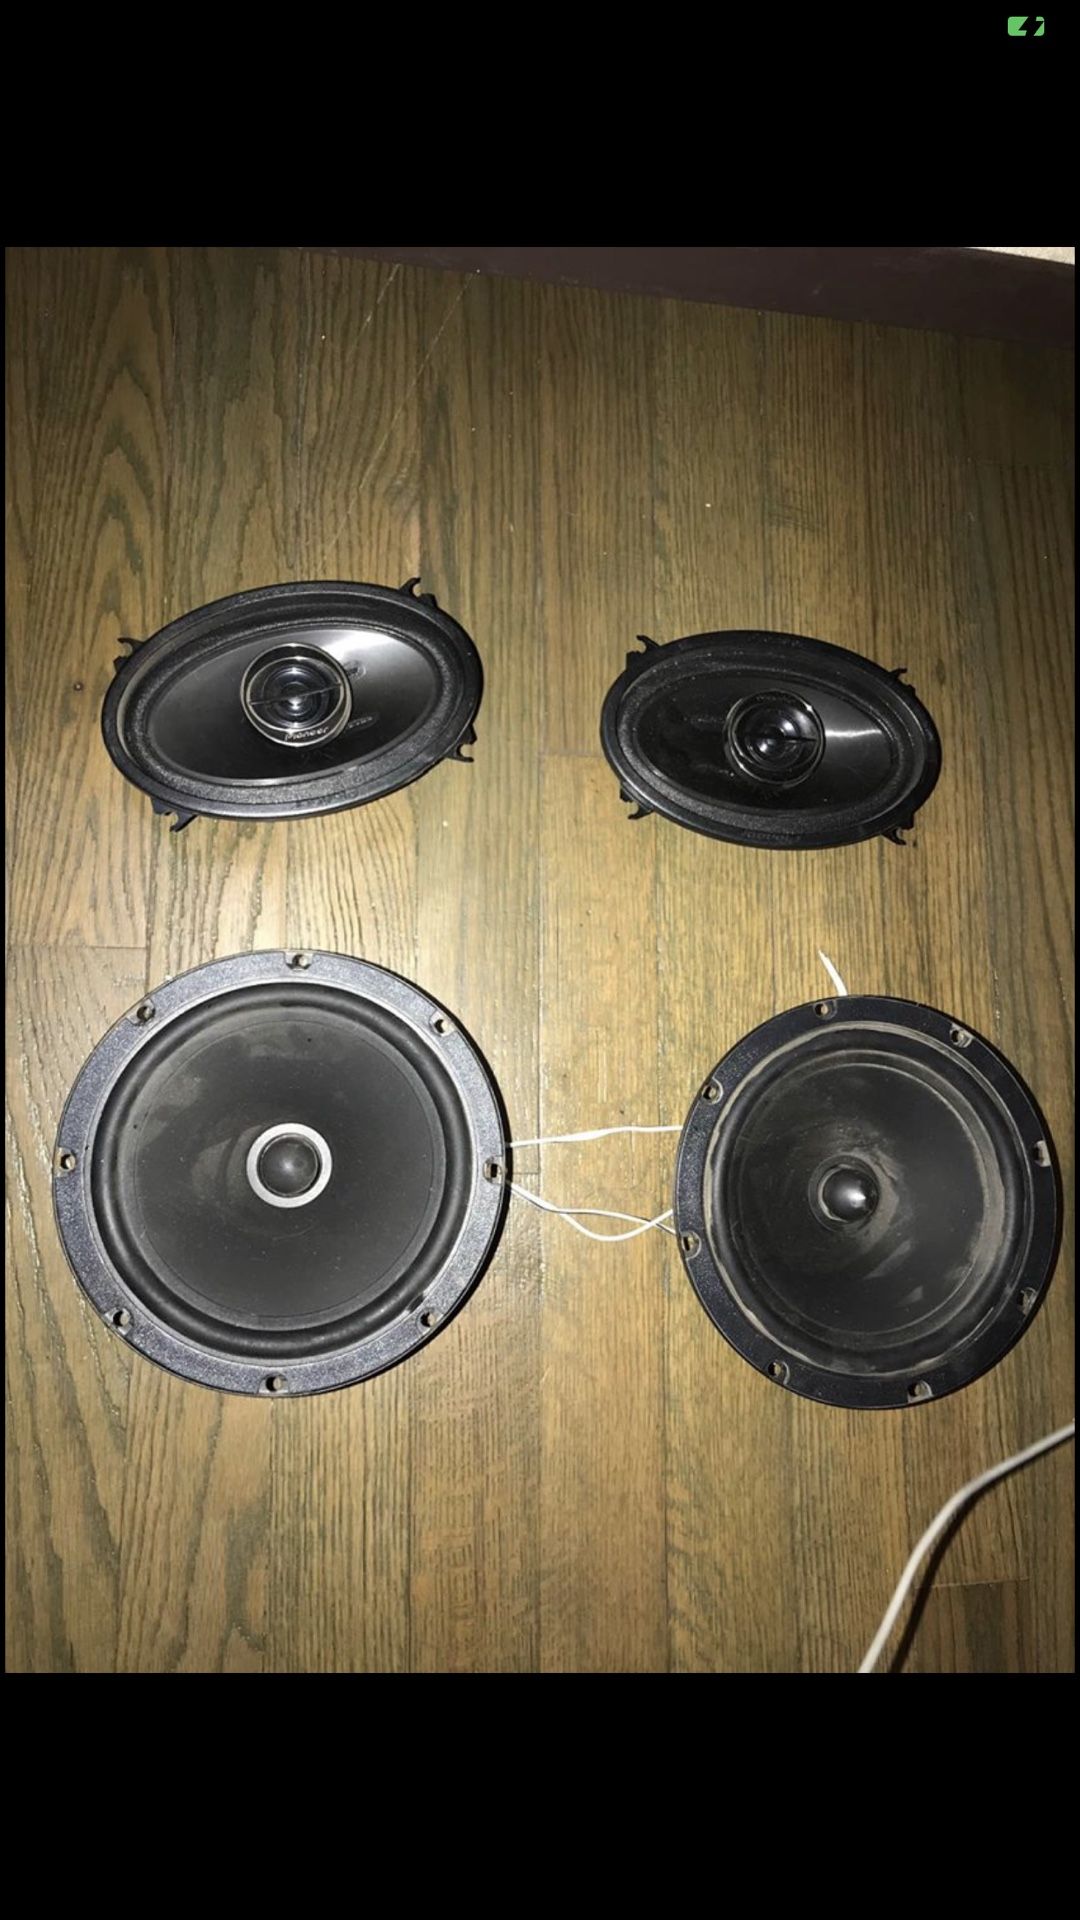 Door speakers